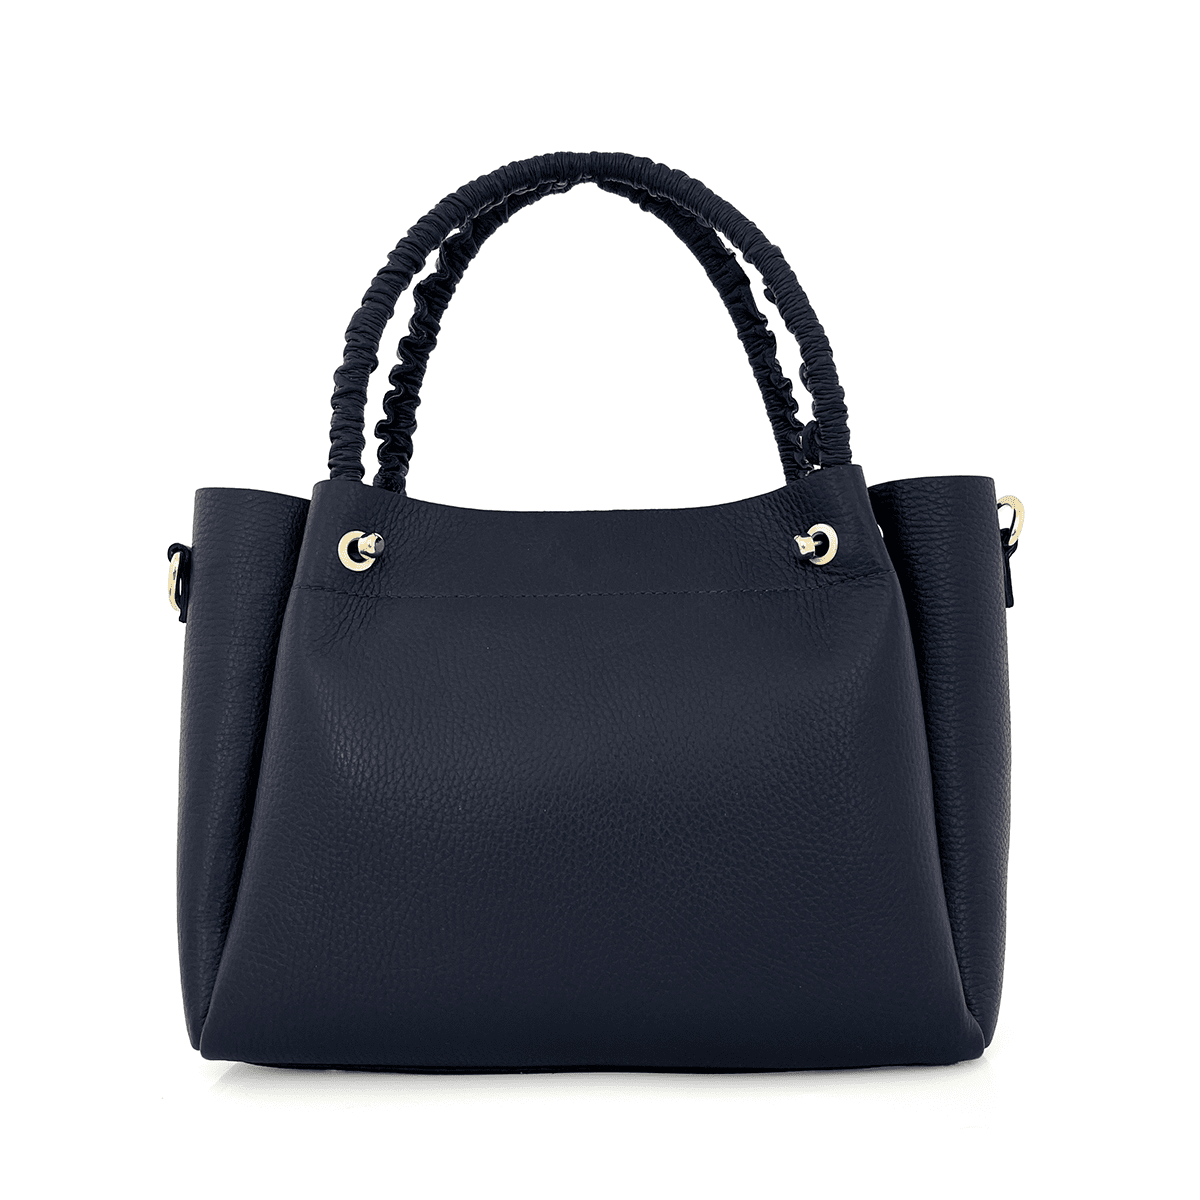 Дамска чанта от естествена кожа Aversa - тъмно синя 